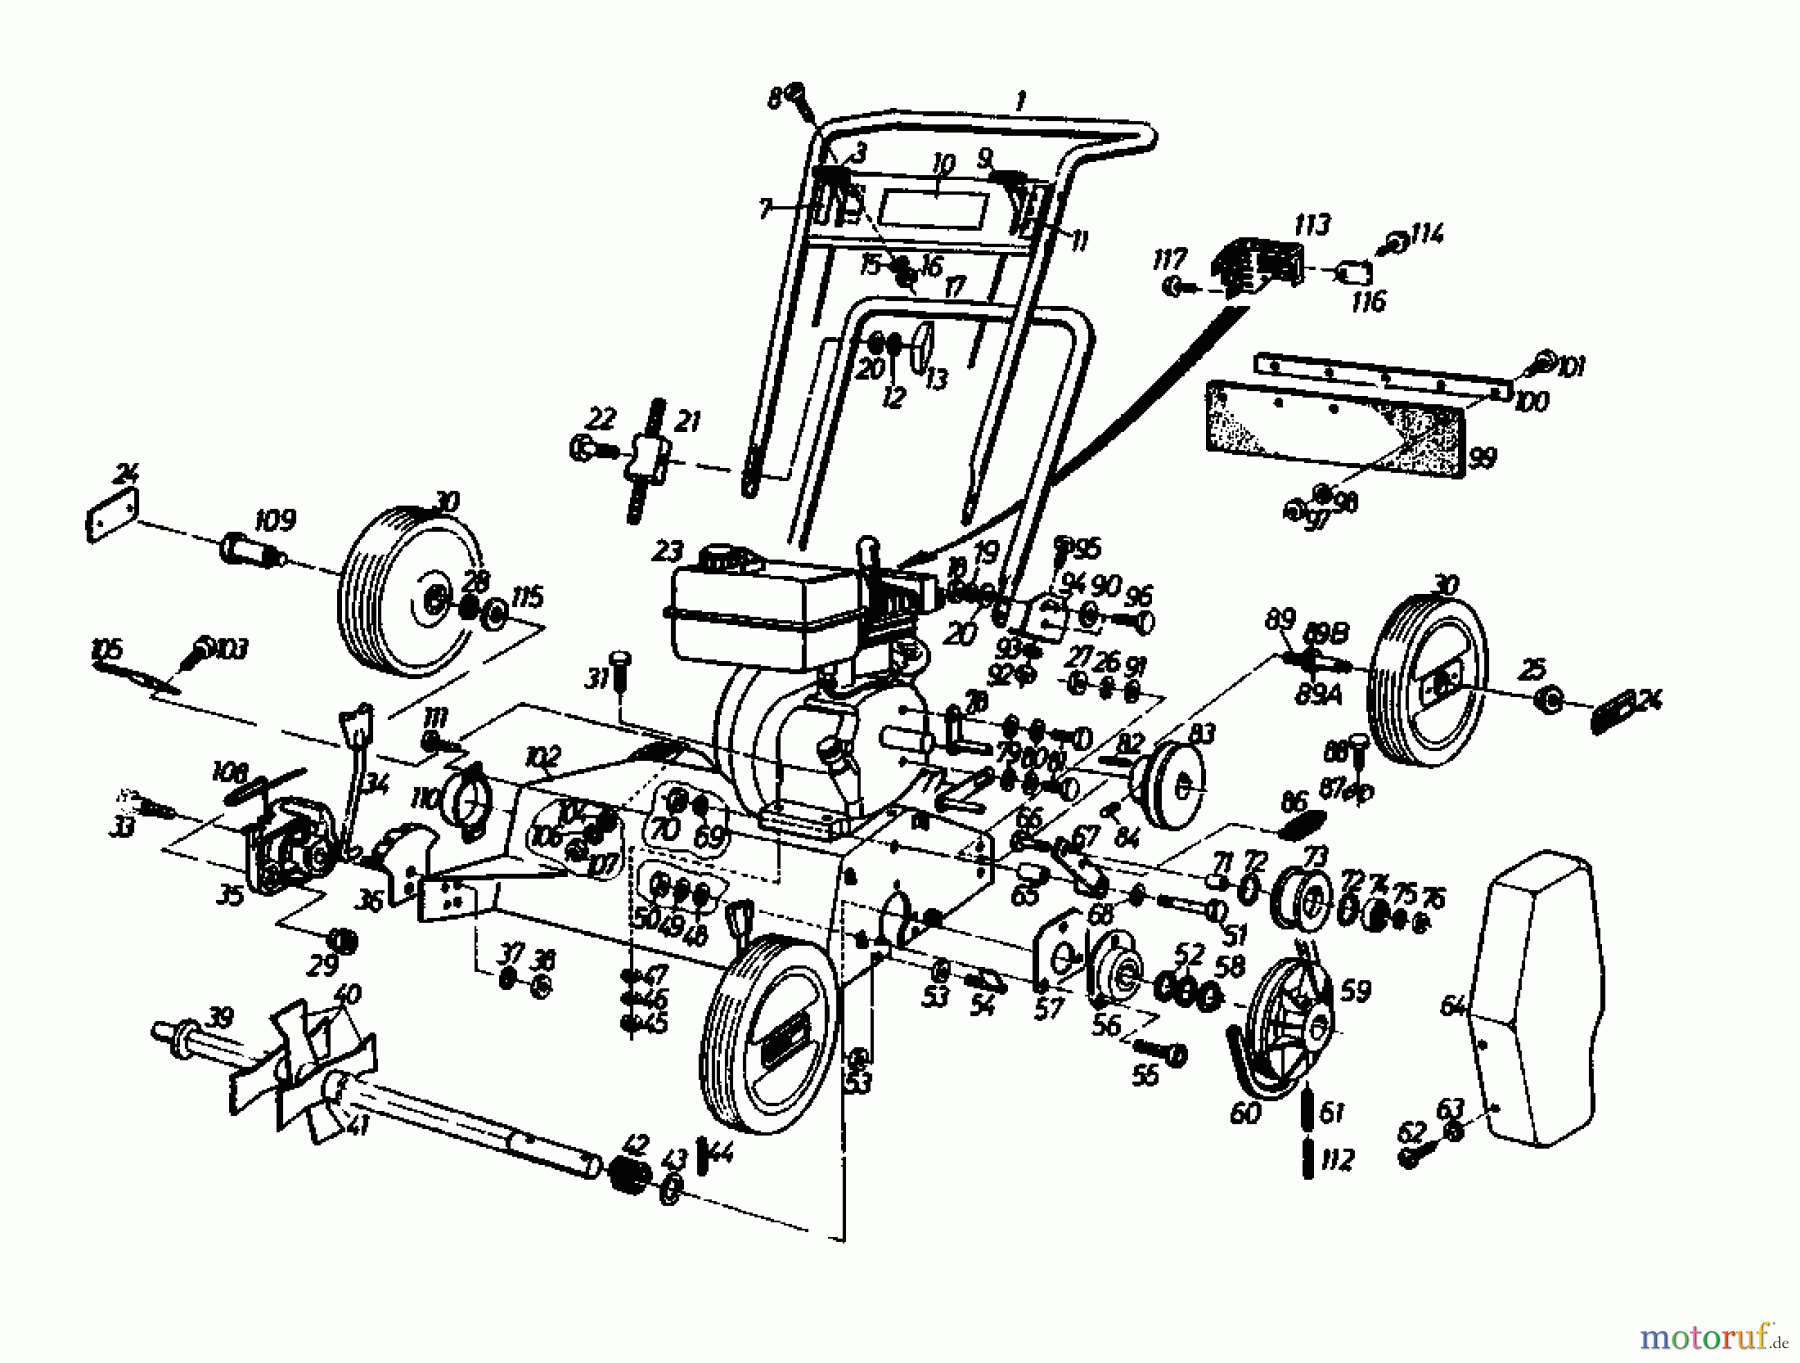  Gutbrod Petrol verticutter VS 40 A 00054.04  (1988) Basic machine